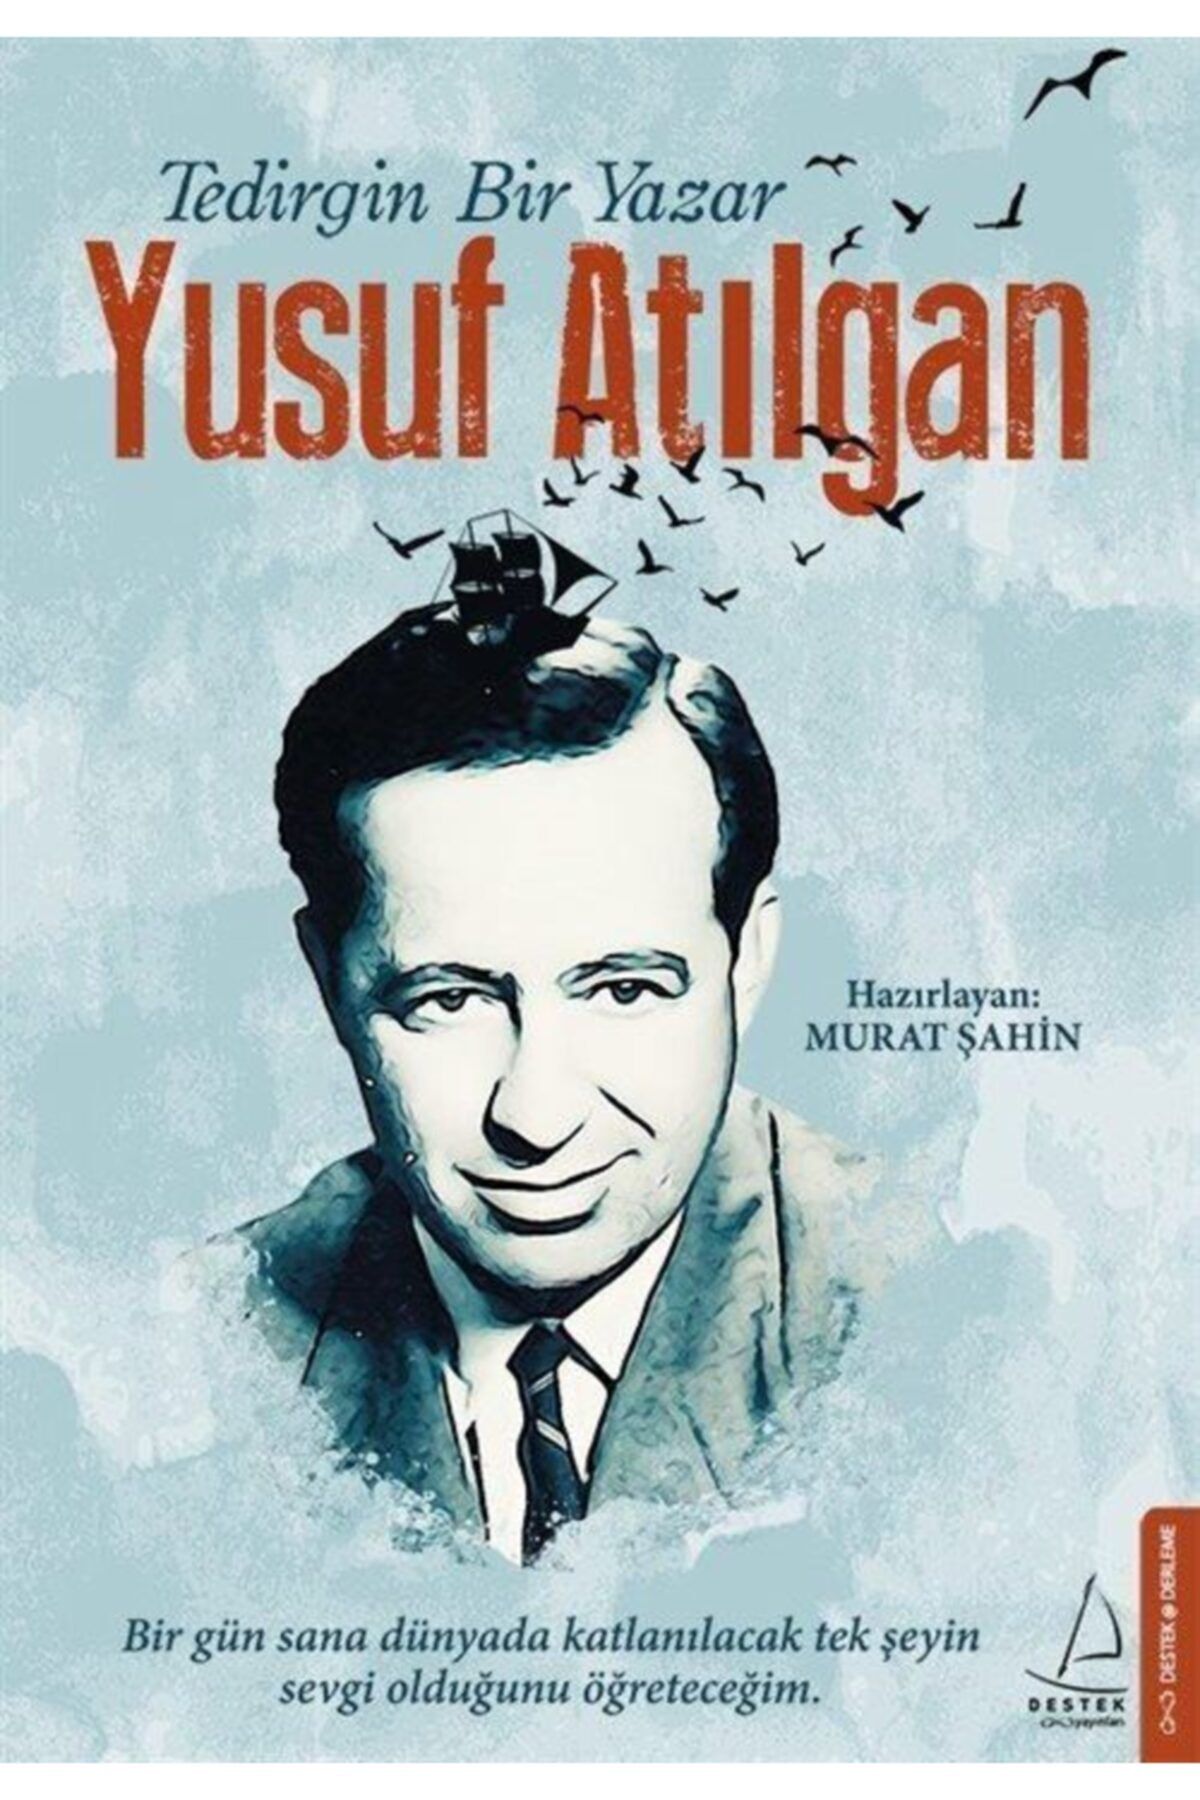 Destek Yayınları Tedirgin Bir Yazar Yusuf Atılgan / Murat Şahin /